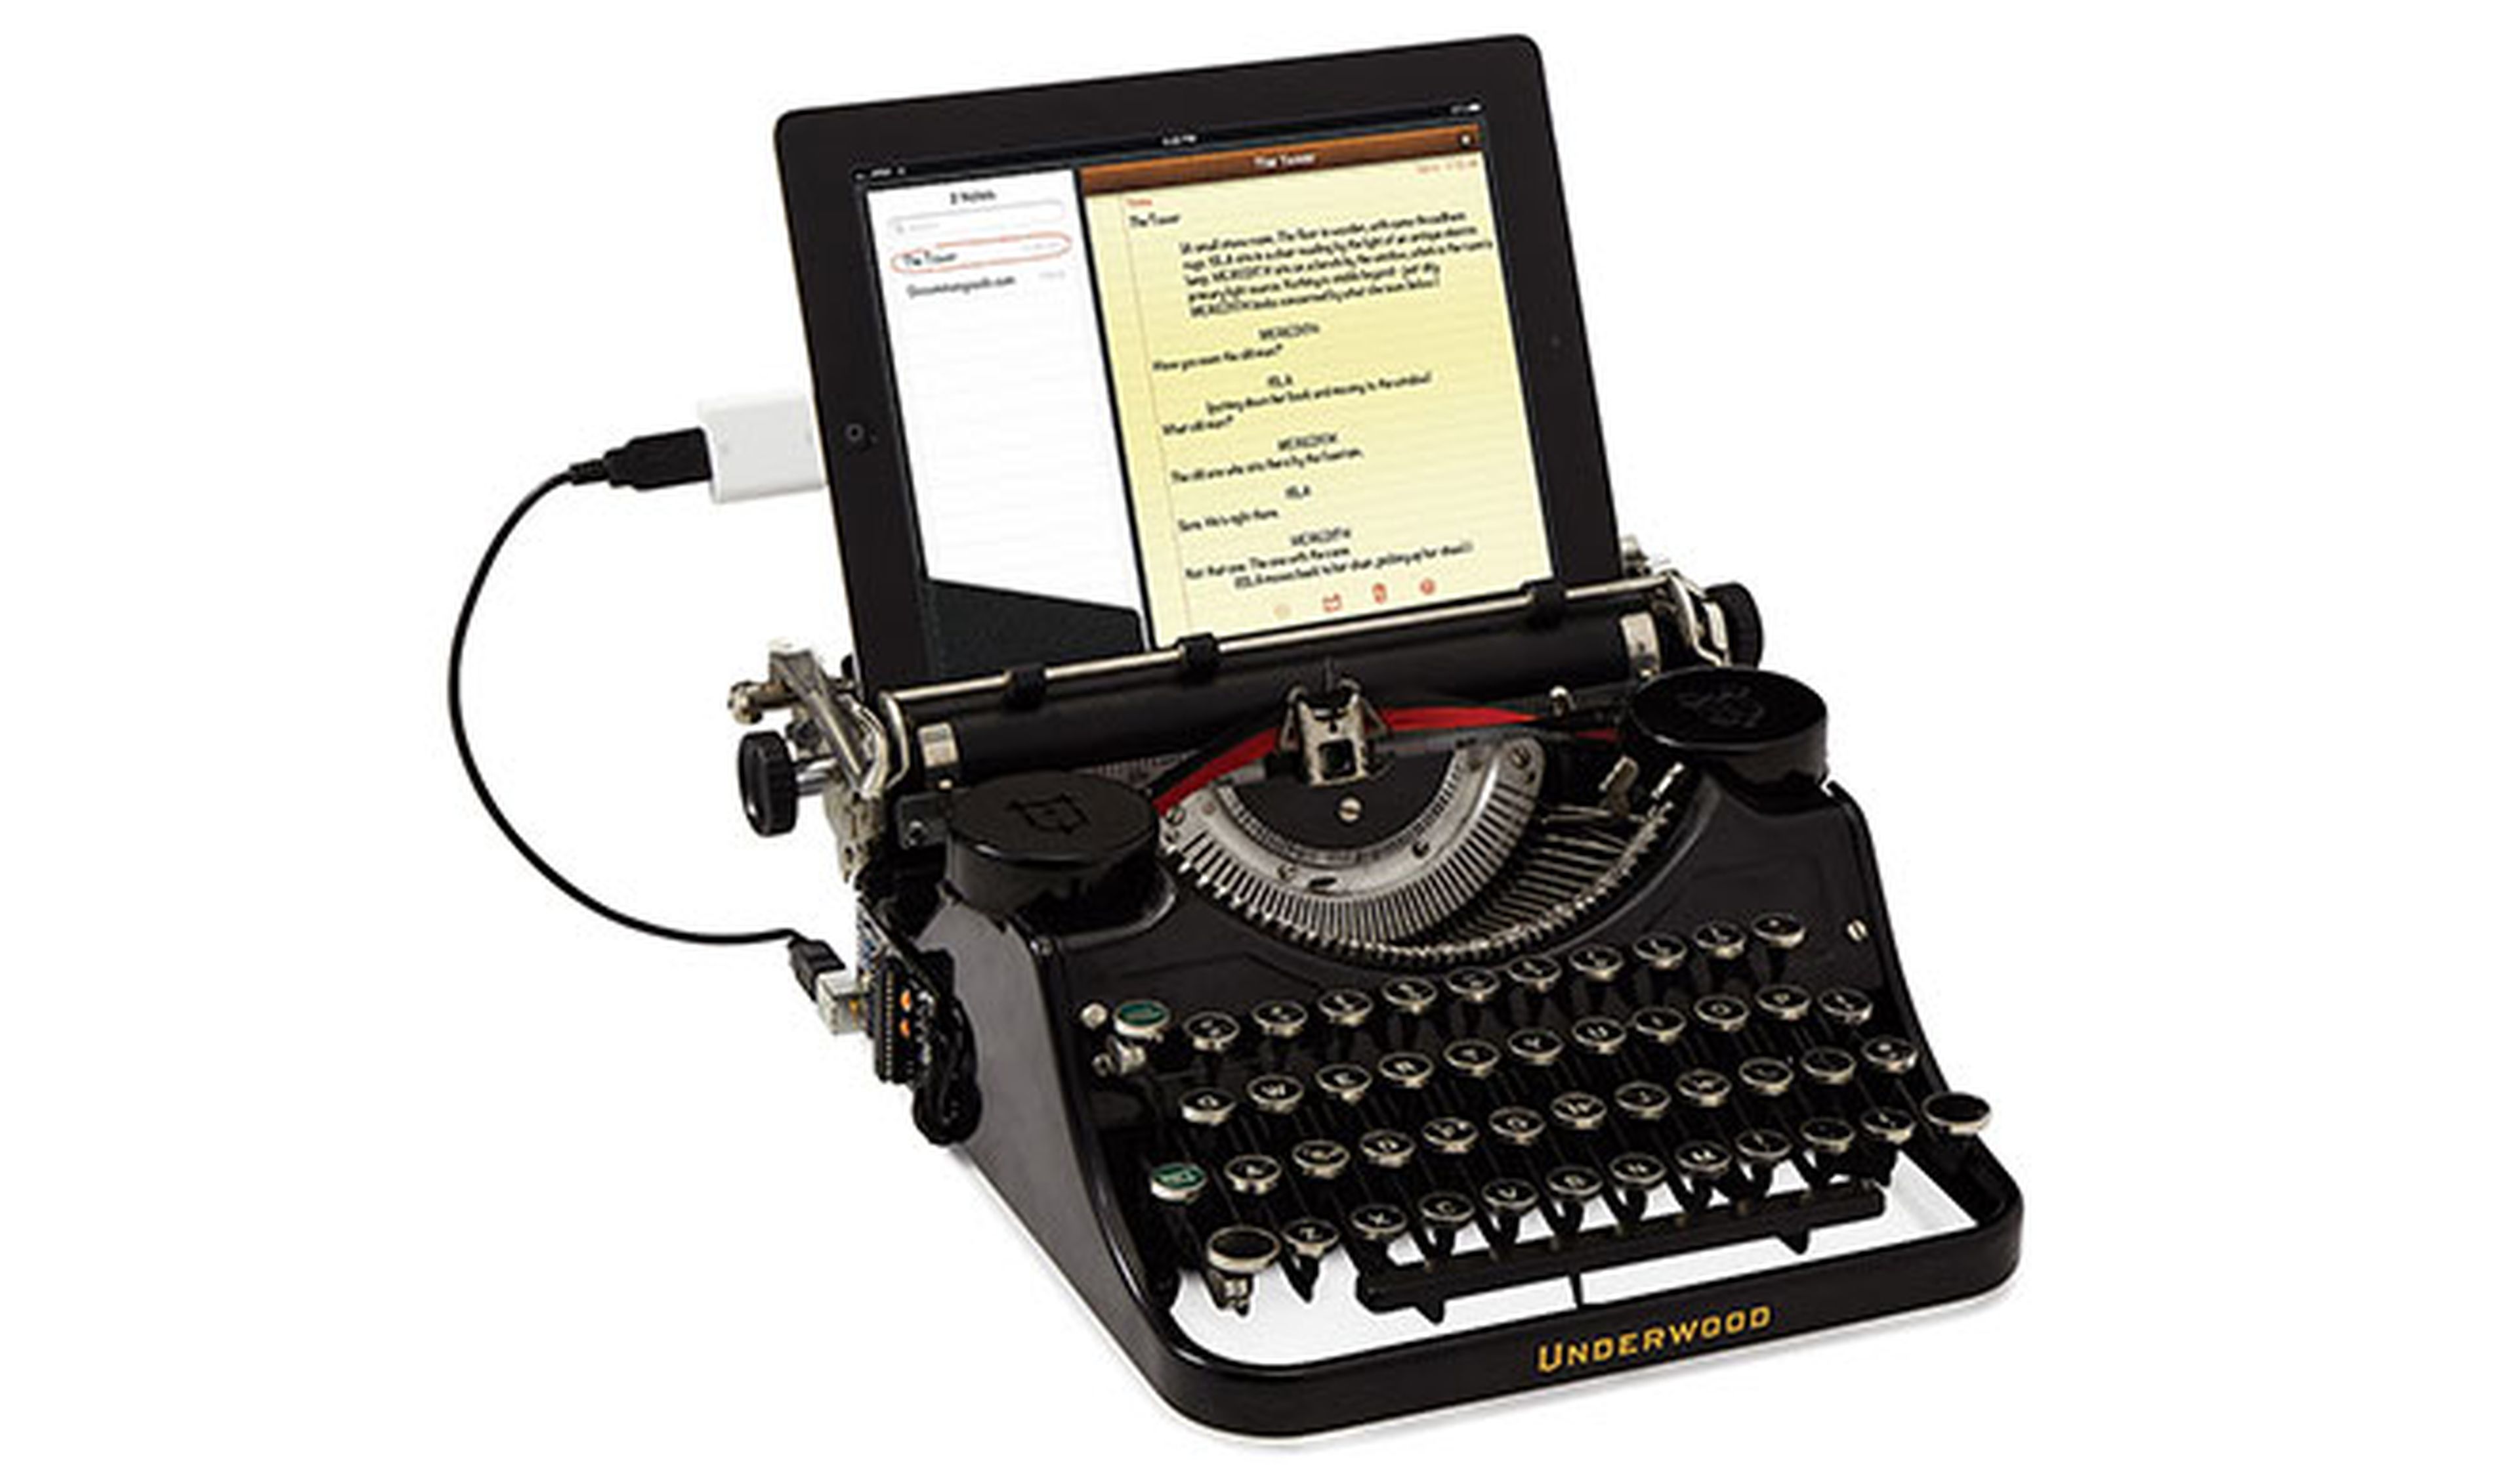 Curioso gadget que moderniza tu vieja máquina de escribir